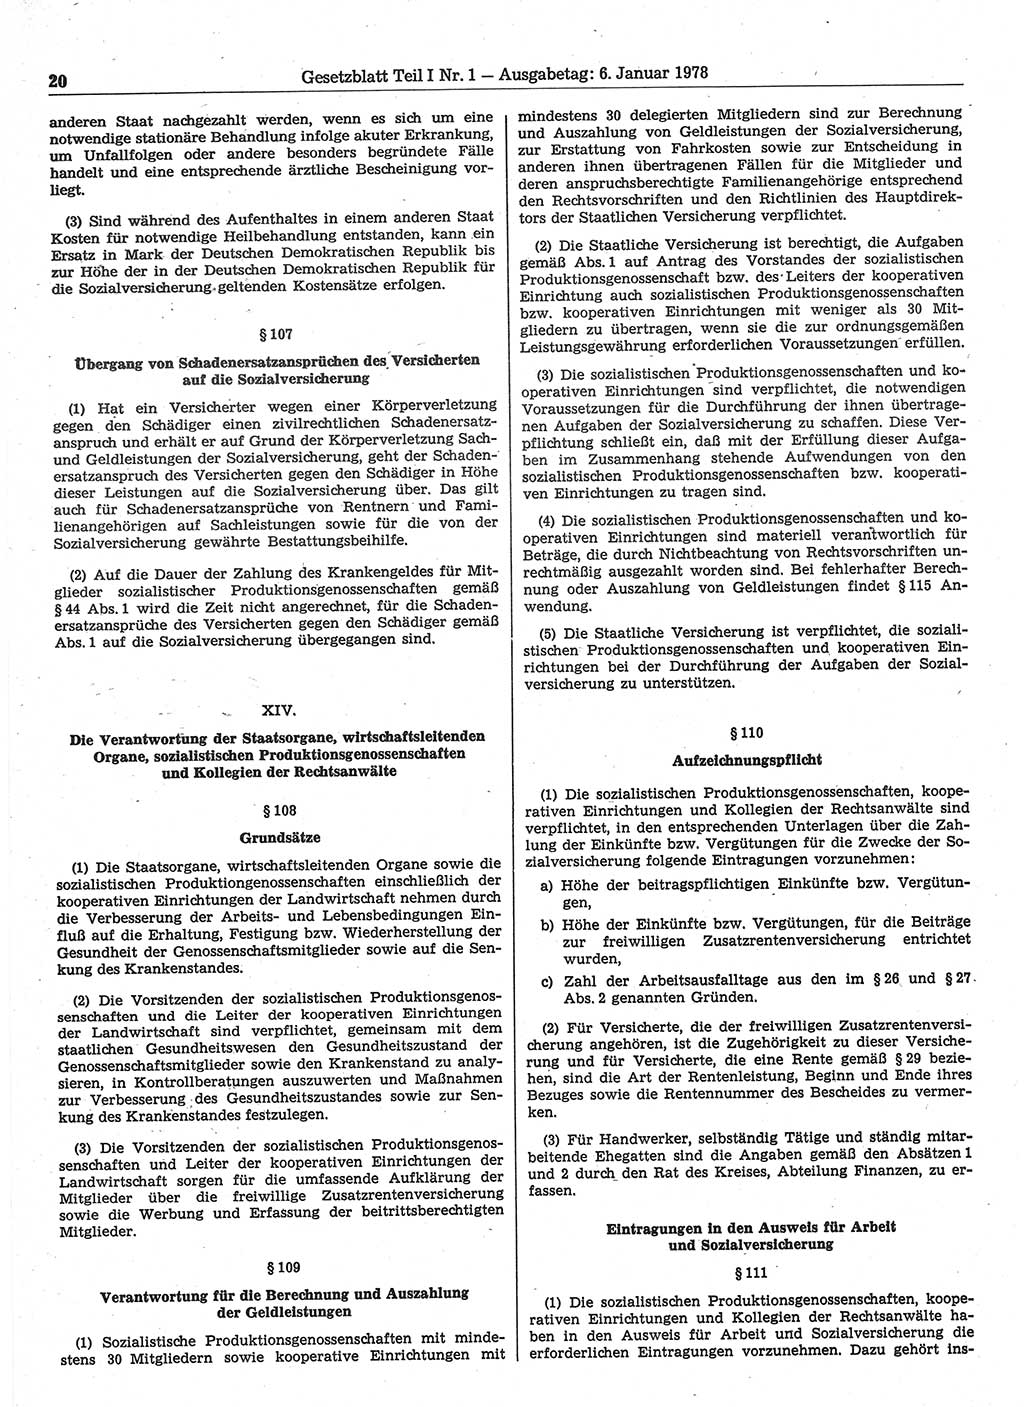 Gesetzblatt (GBl.) der Deutschen Demokratischen Republik (DDR) Teil Ⅰ 1978, Seite 20 (GBl. DDR Ⅰ 1978, S. 20)